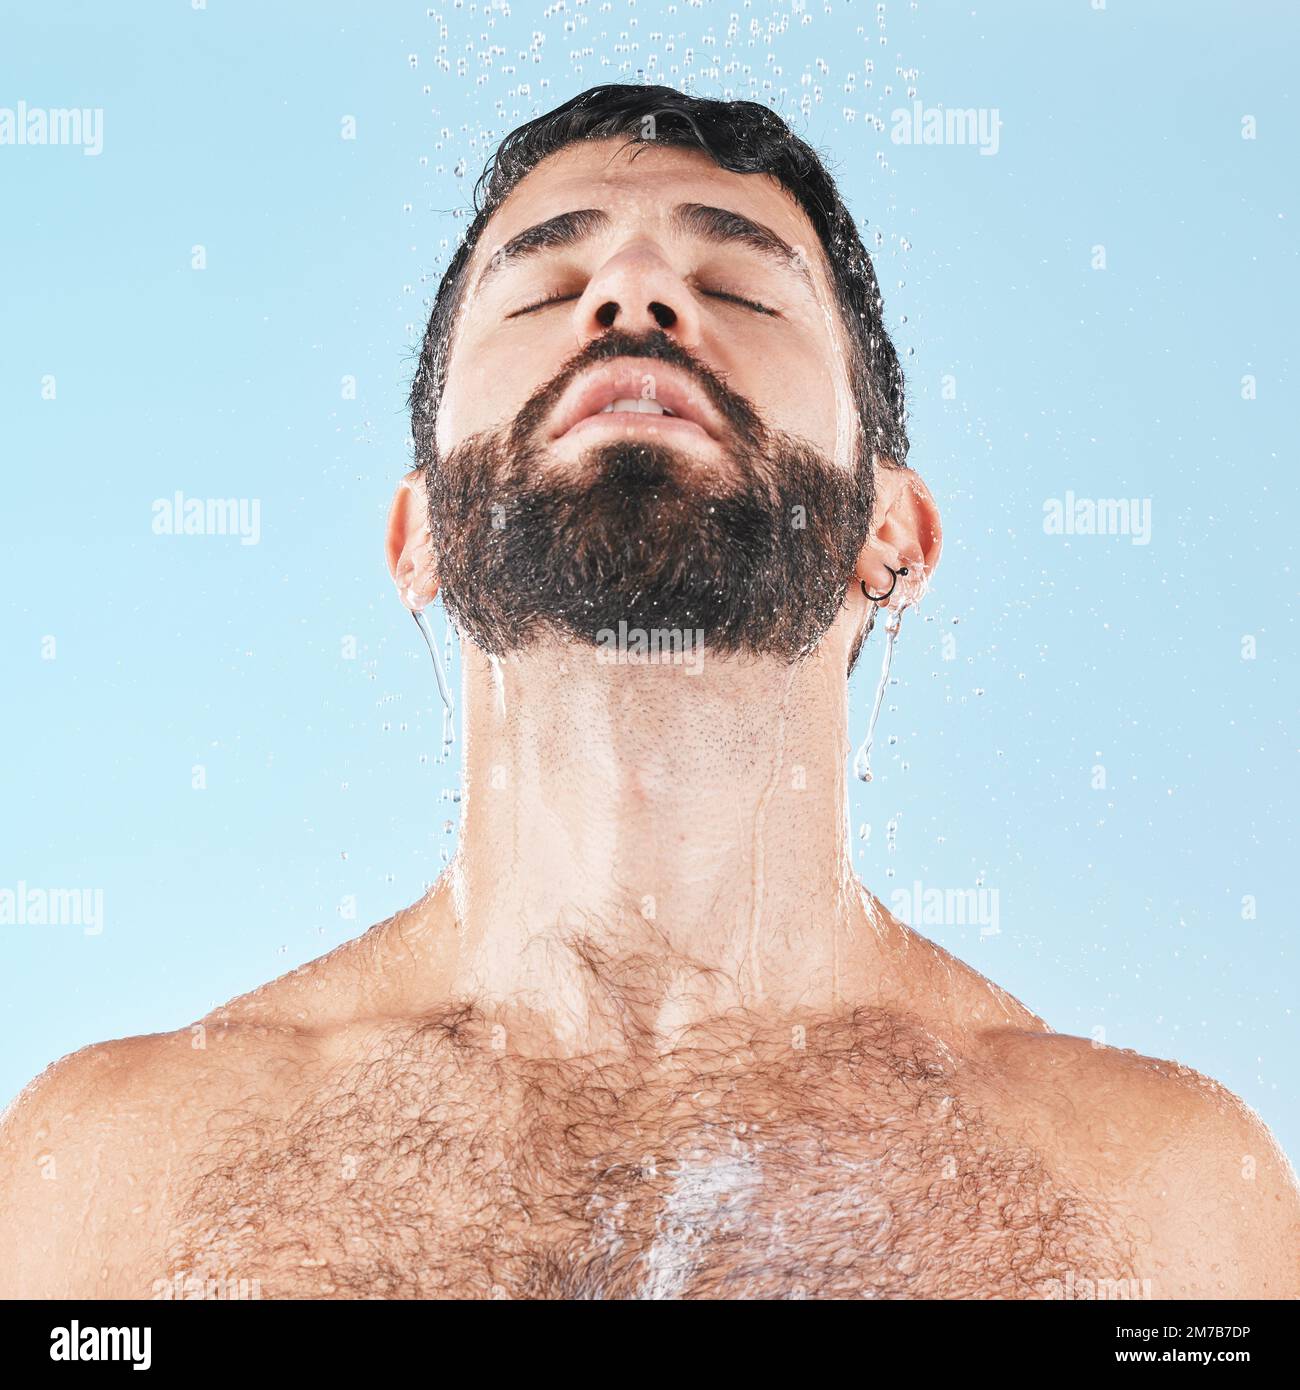 Limpieza facial de un hombre calvo en un spa, con fondo blanco y